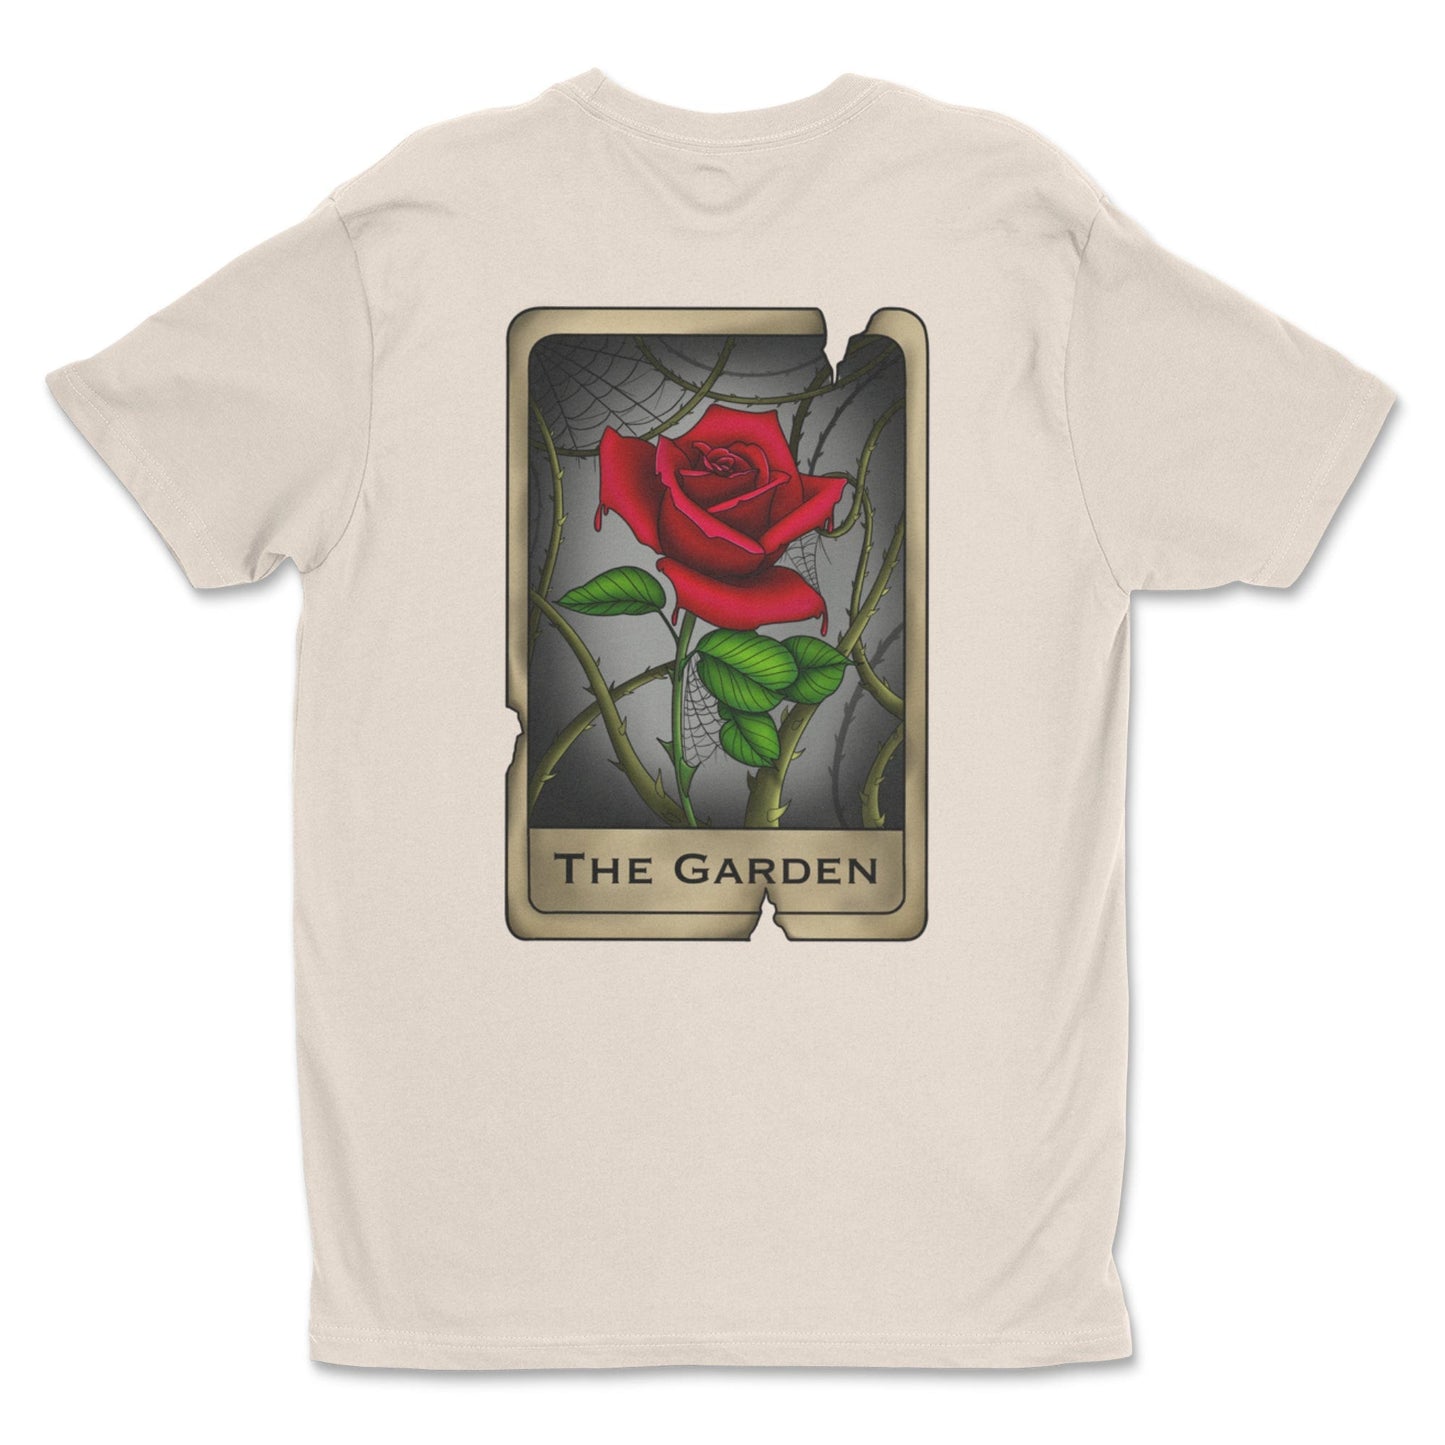 Legendary ltd. T SHIRT "The Garden" Rose Tee by Kaylee